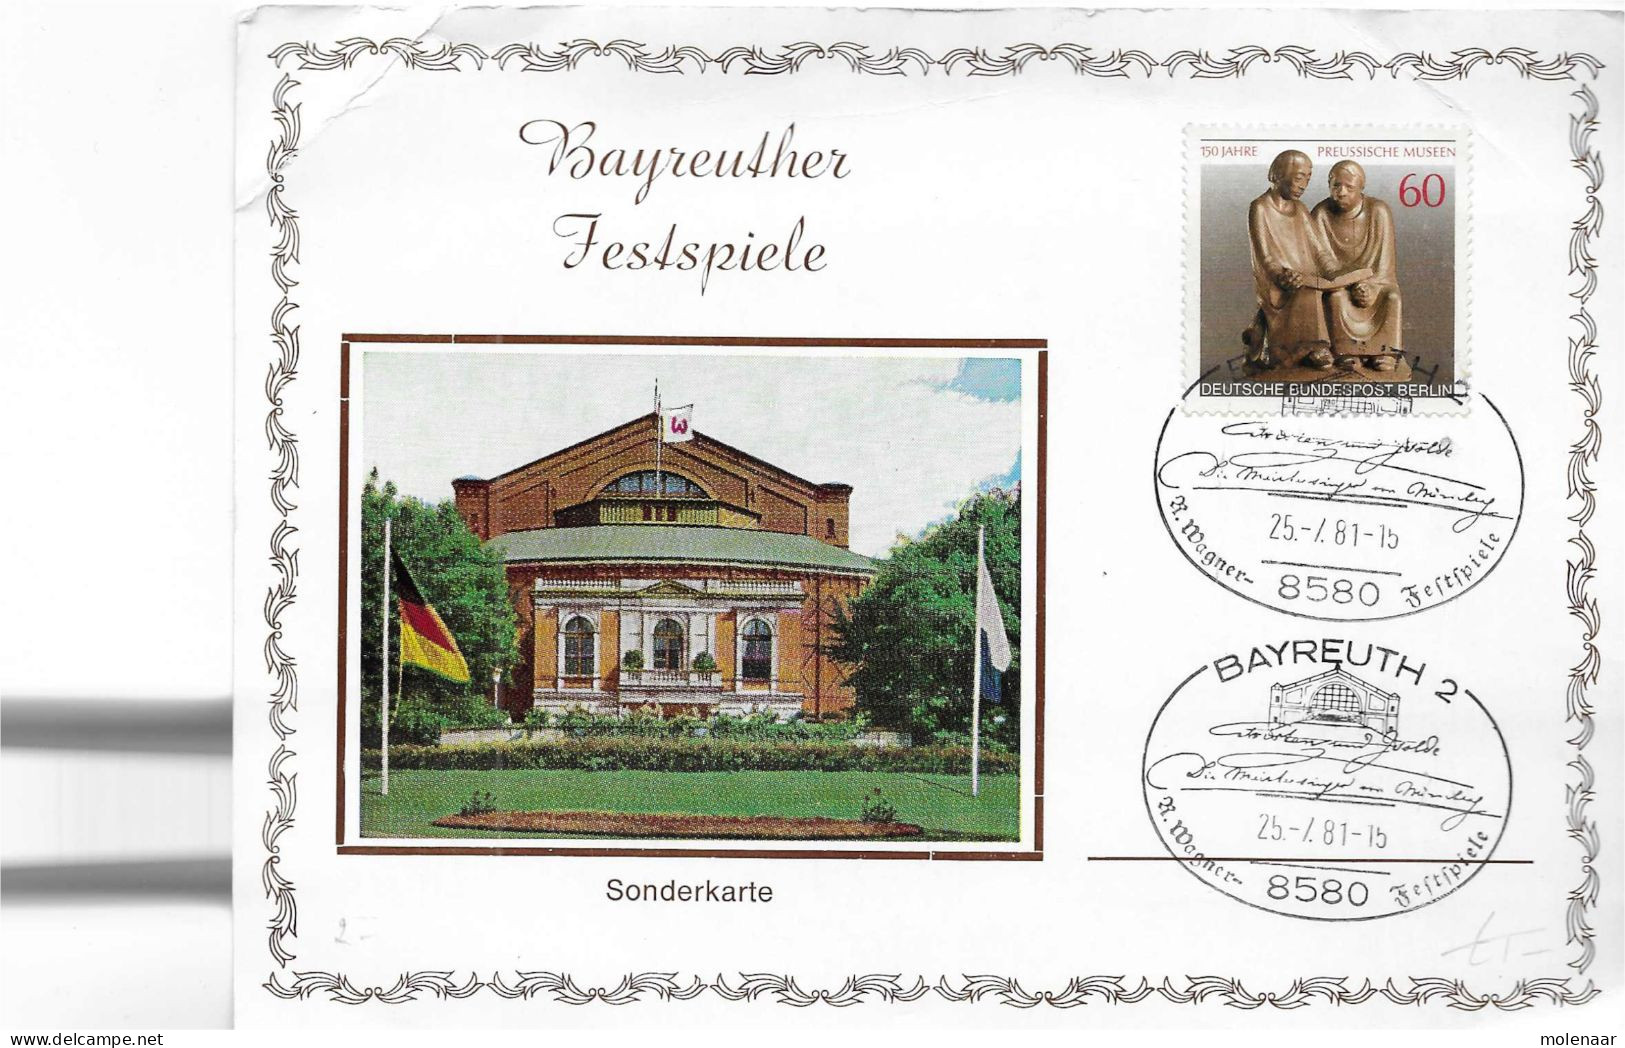 Postzegels > Europa > Duitsland > Berlijn > 1980-1990 >kaart Met No 626 (17297) - Covers & Documents